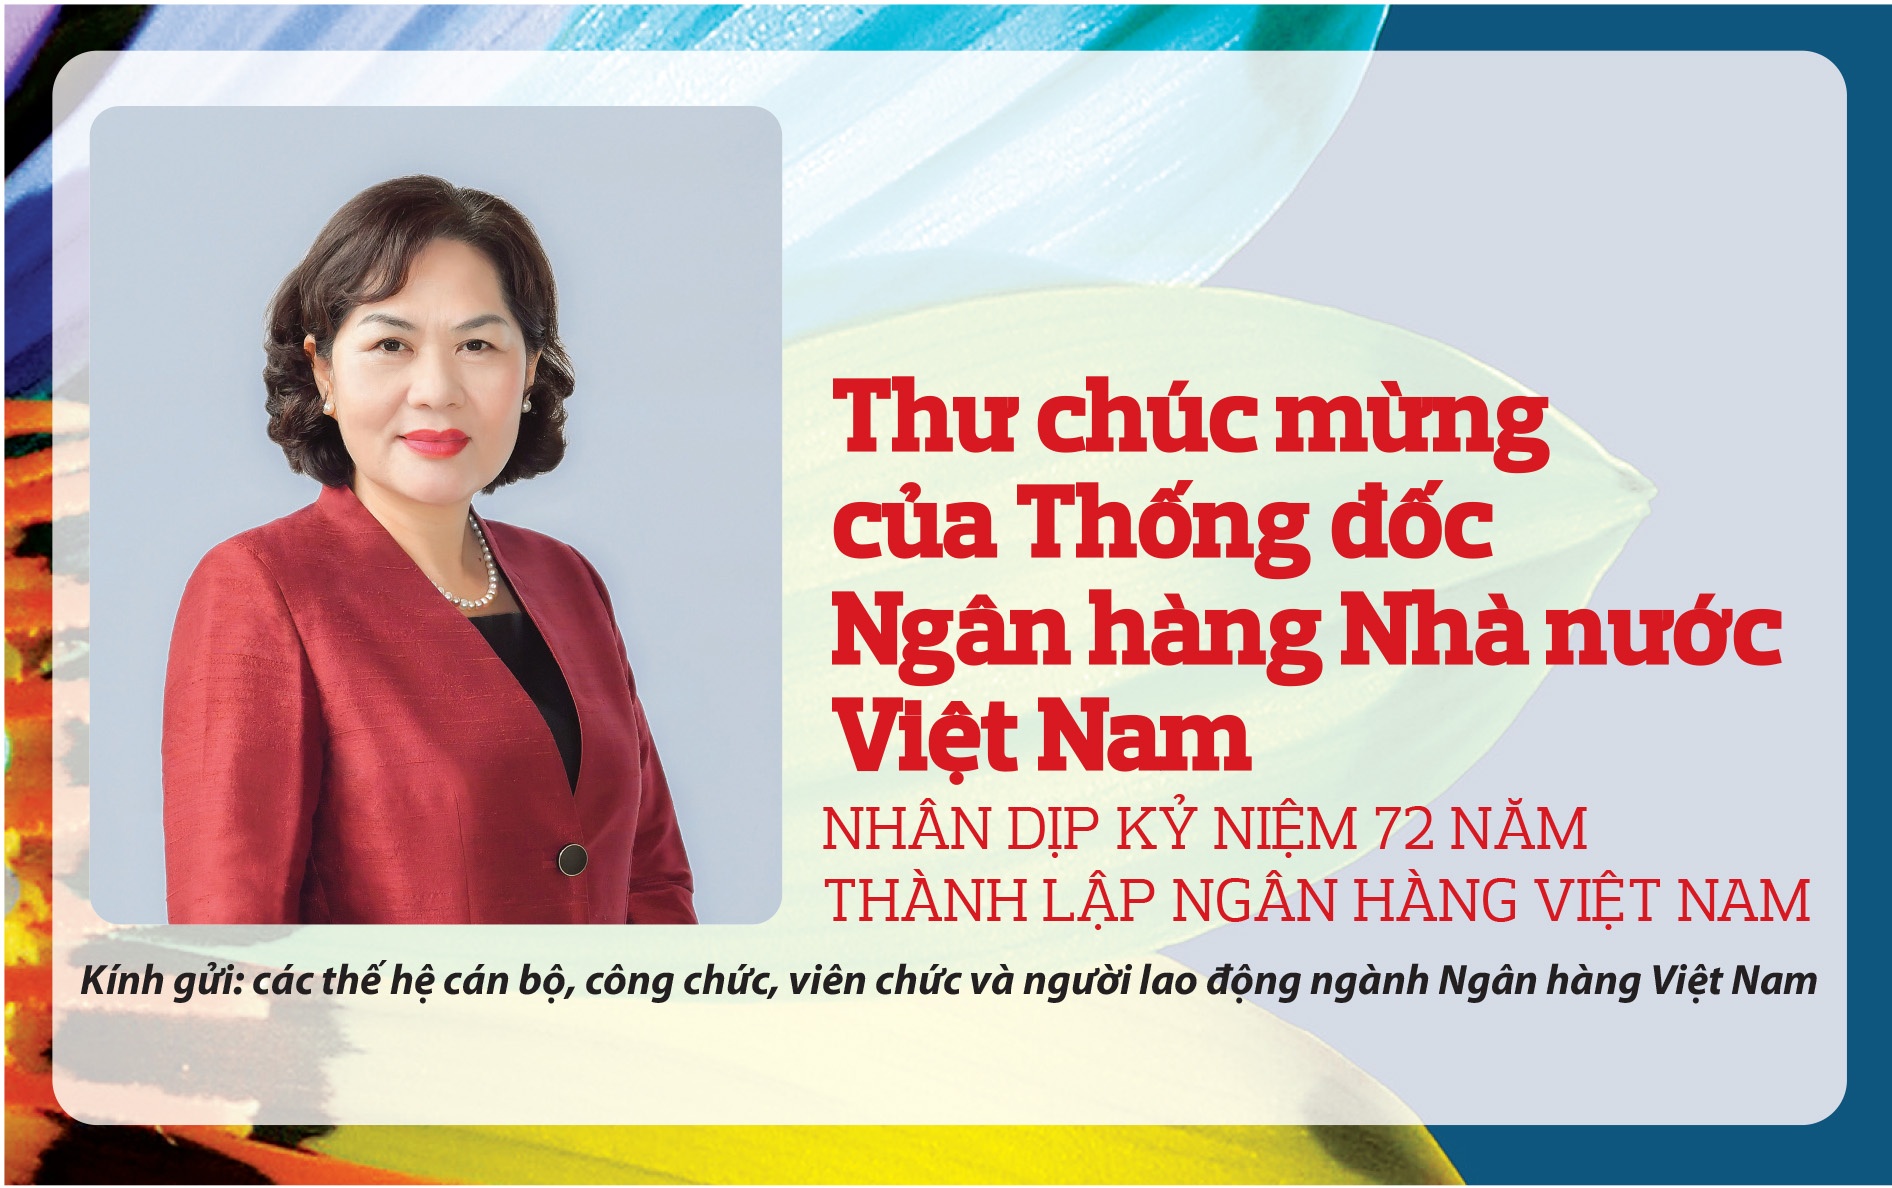 Thư chúc mừng của Thống đốc Ngân hàng Nhà nước Việt Nam nhân dịp kỷ niệm 72 năm  thành lập Ngân hàng Việt Nam